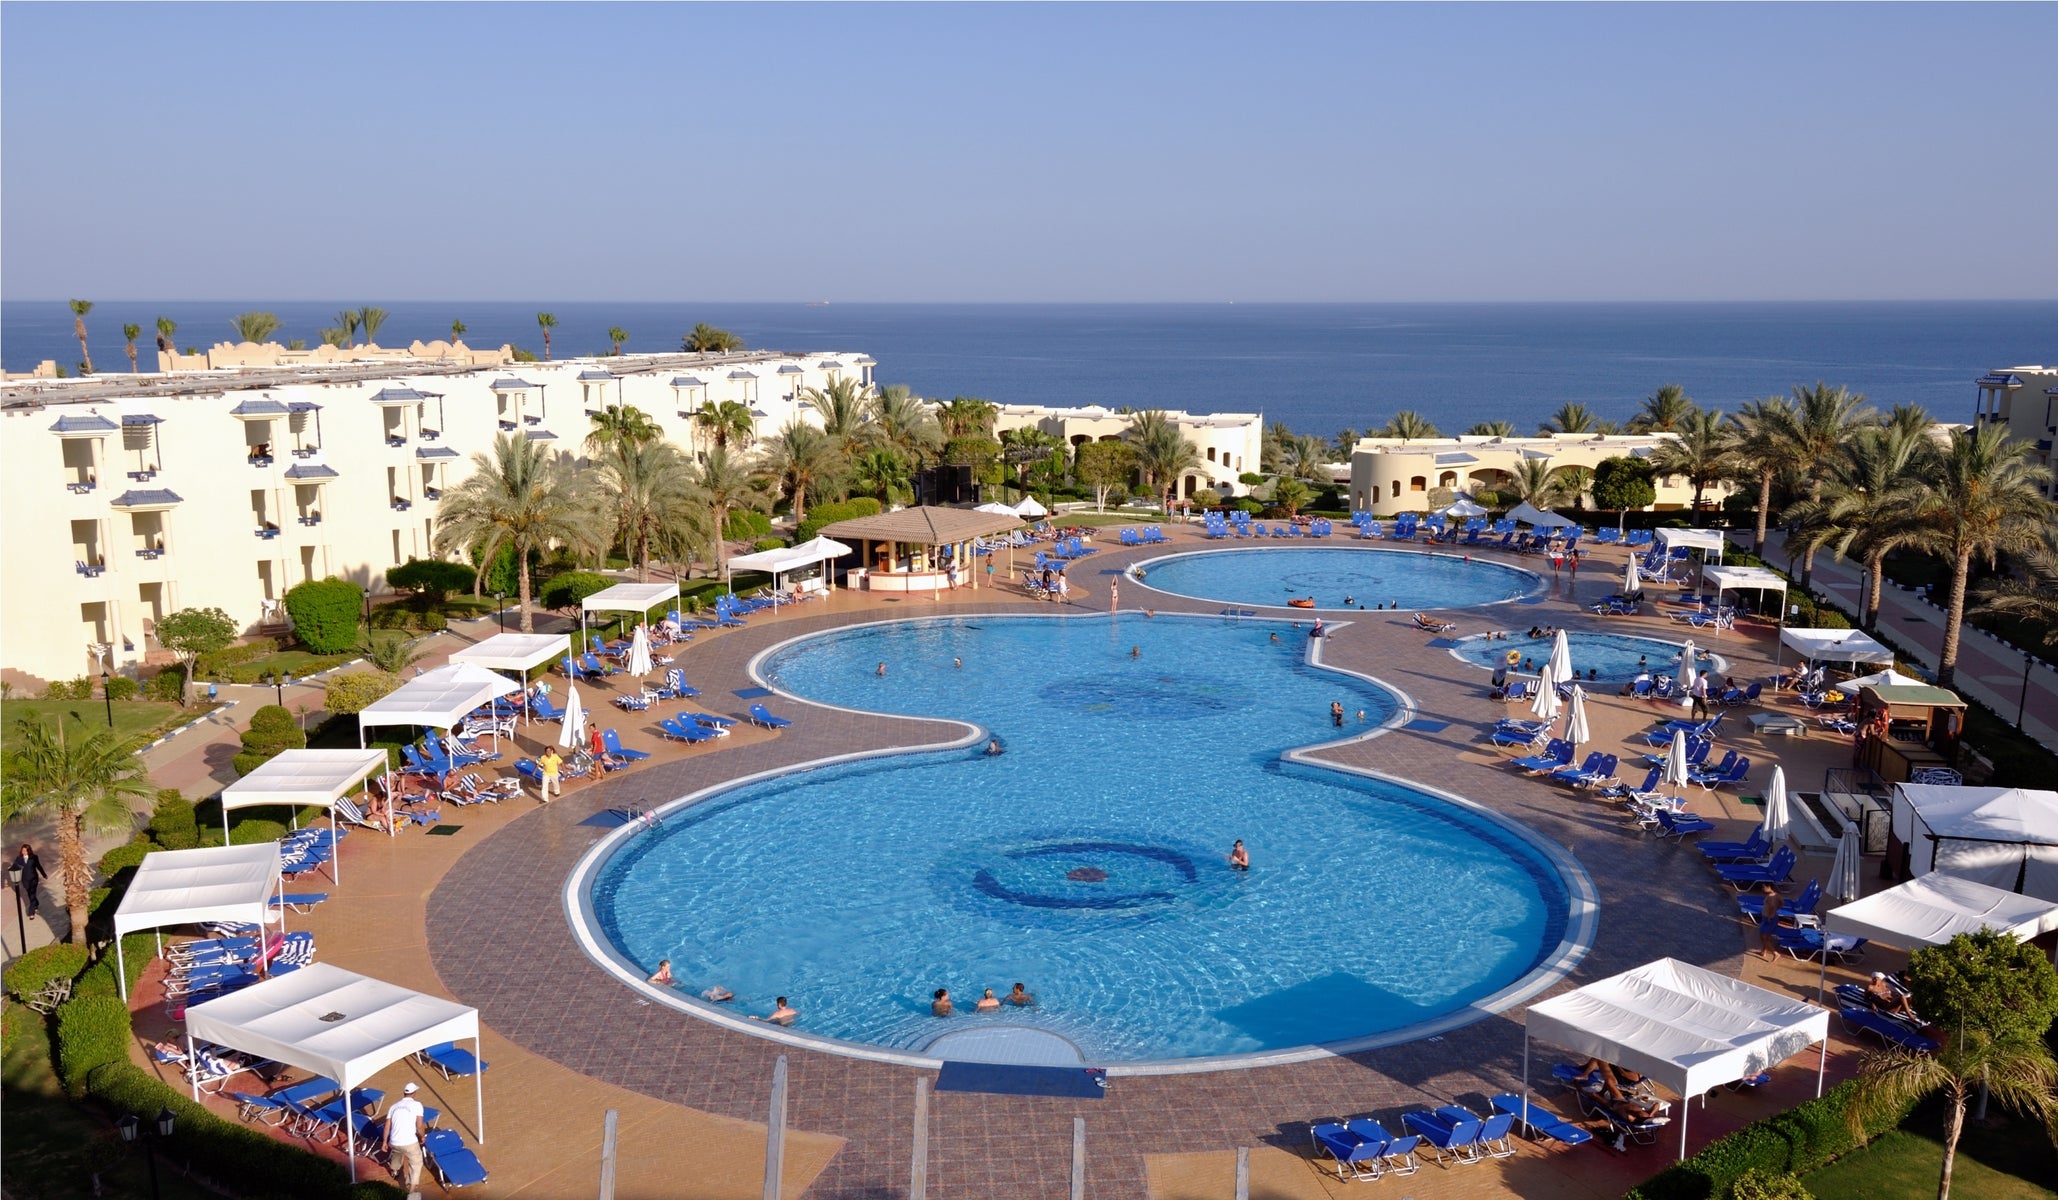 ارخص شركة حجوزات منتجع جراند اويزيس ريزورت شرم الشيخ - شركة رحلتي | Grand Oasis Resort